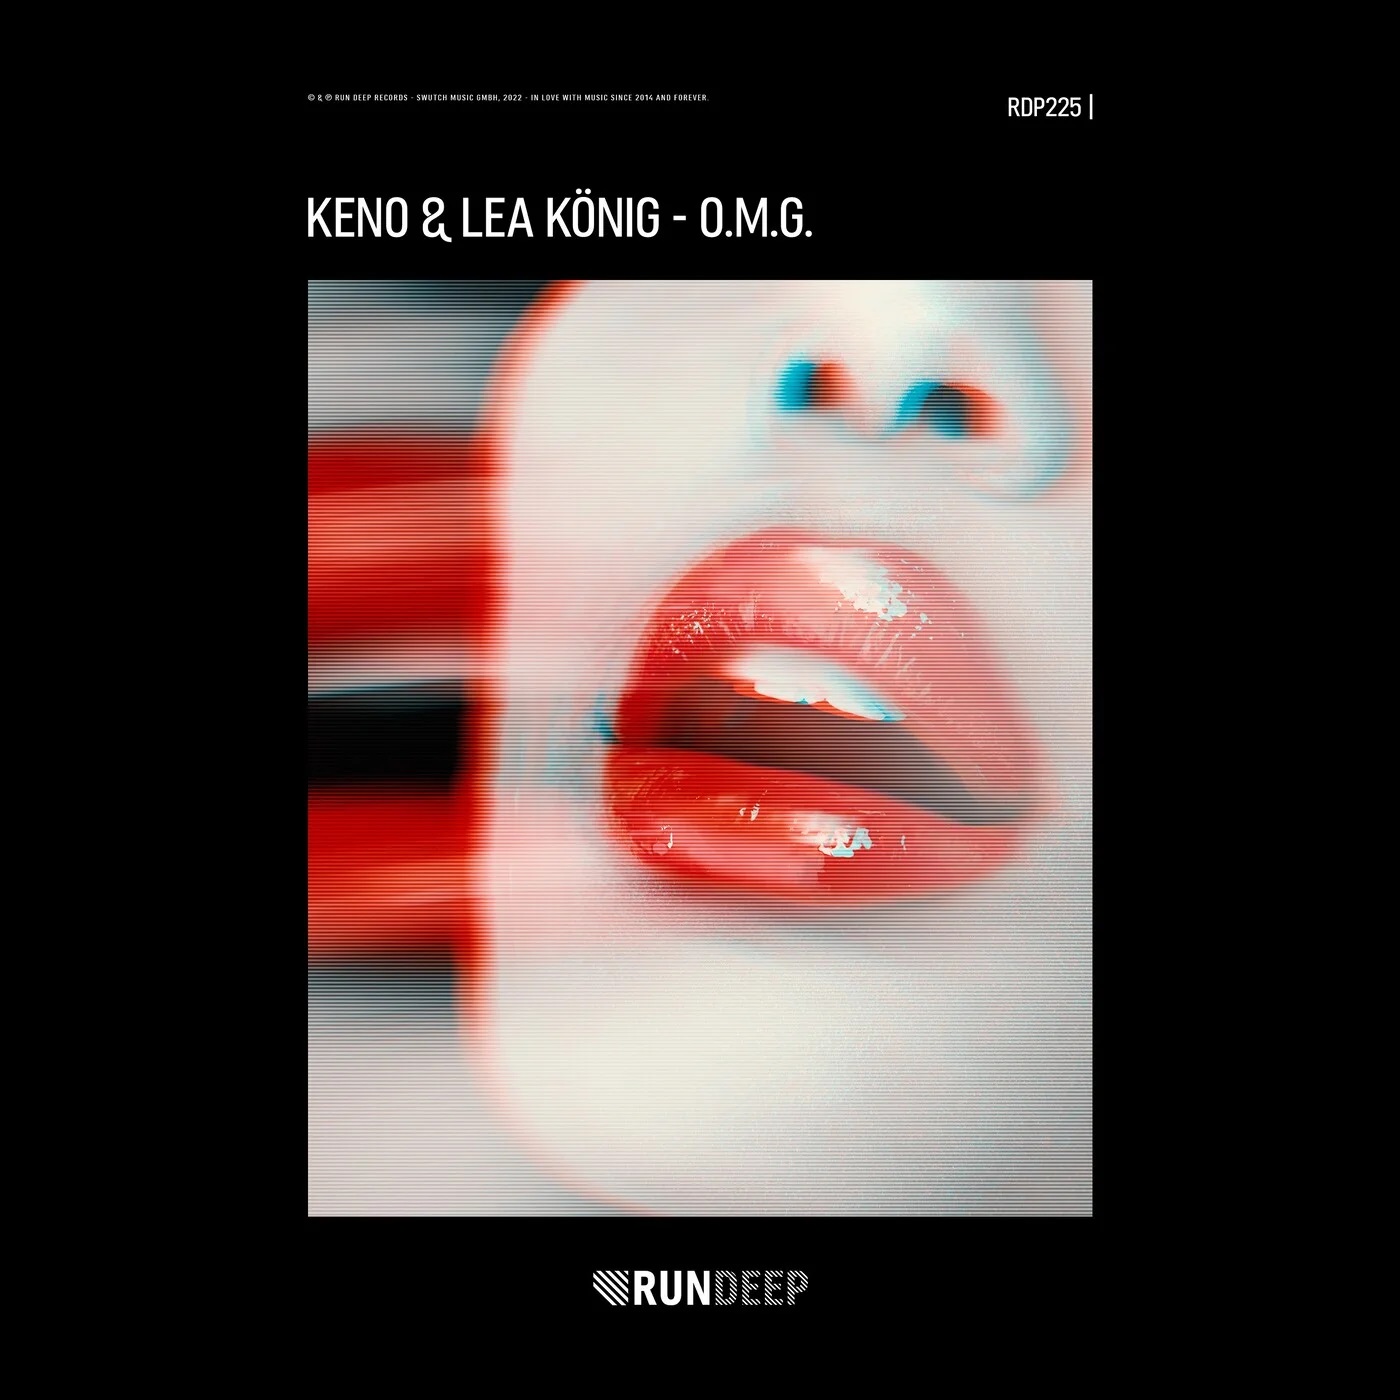 Keno & Lea König - O.M.G. (Extended Mix)